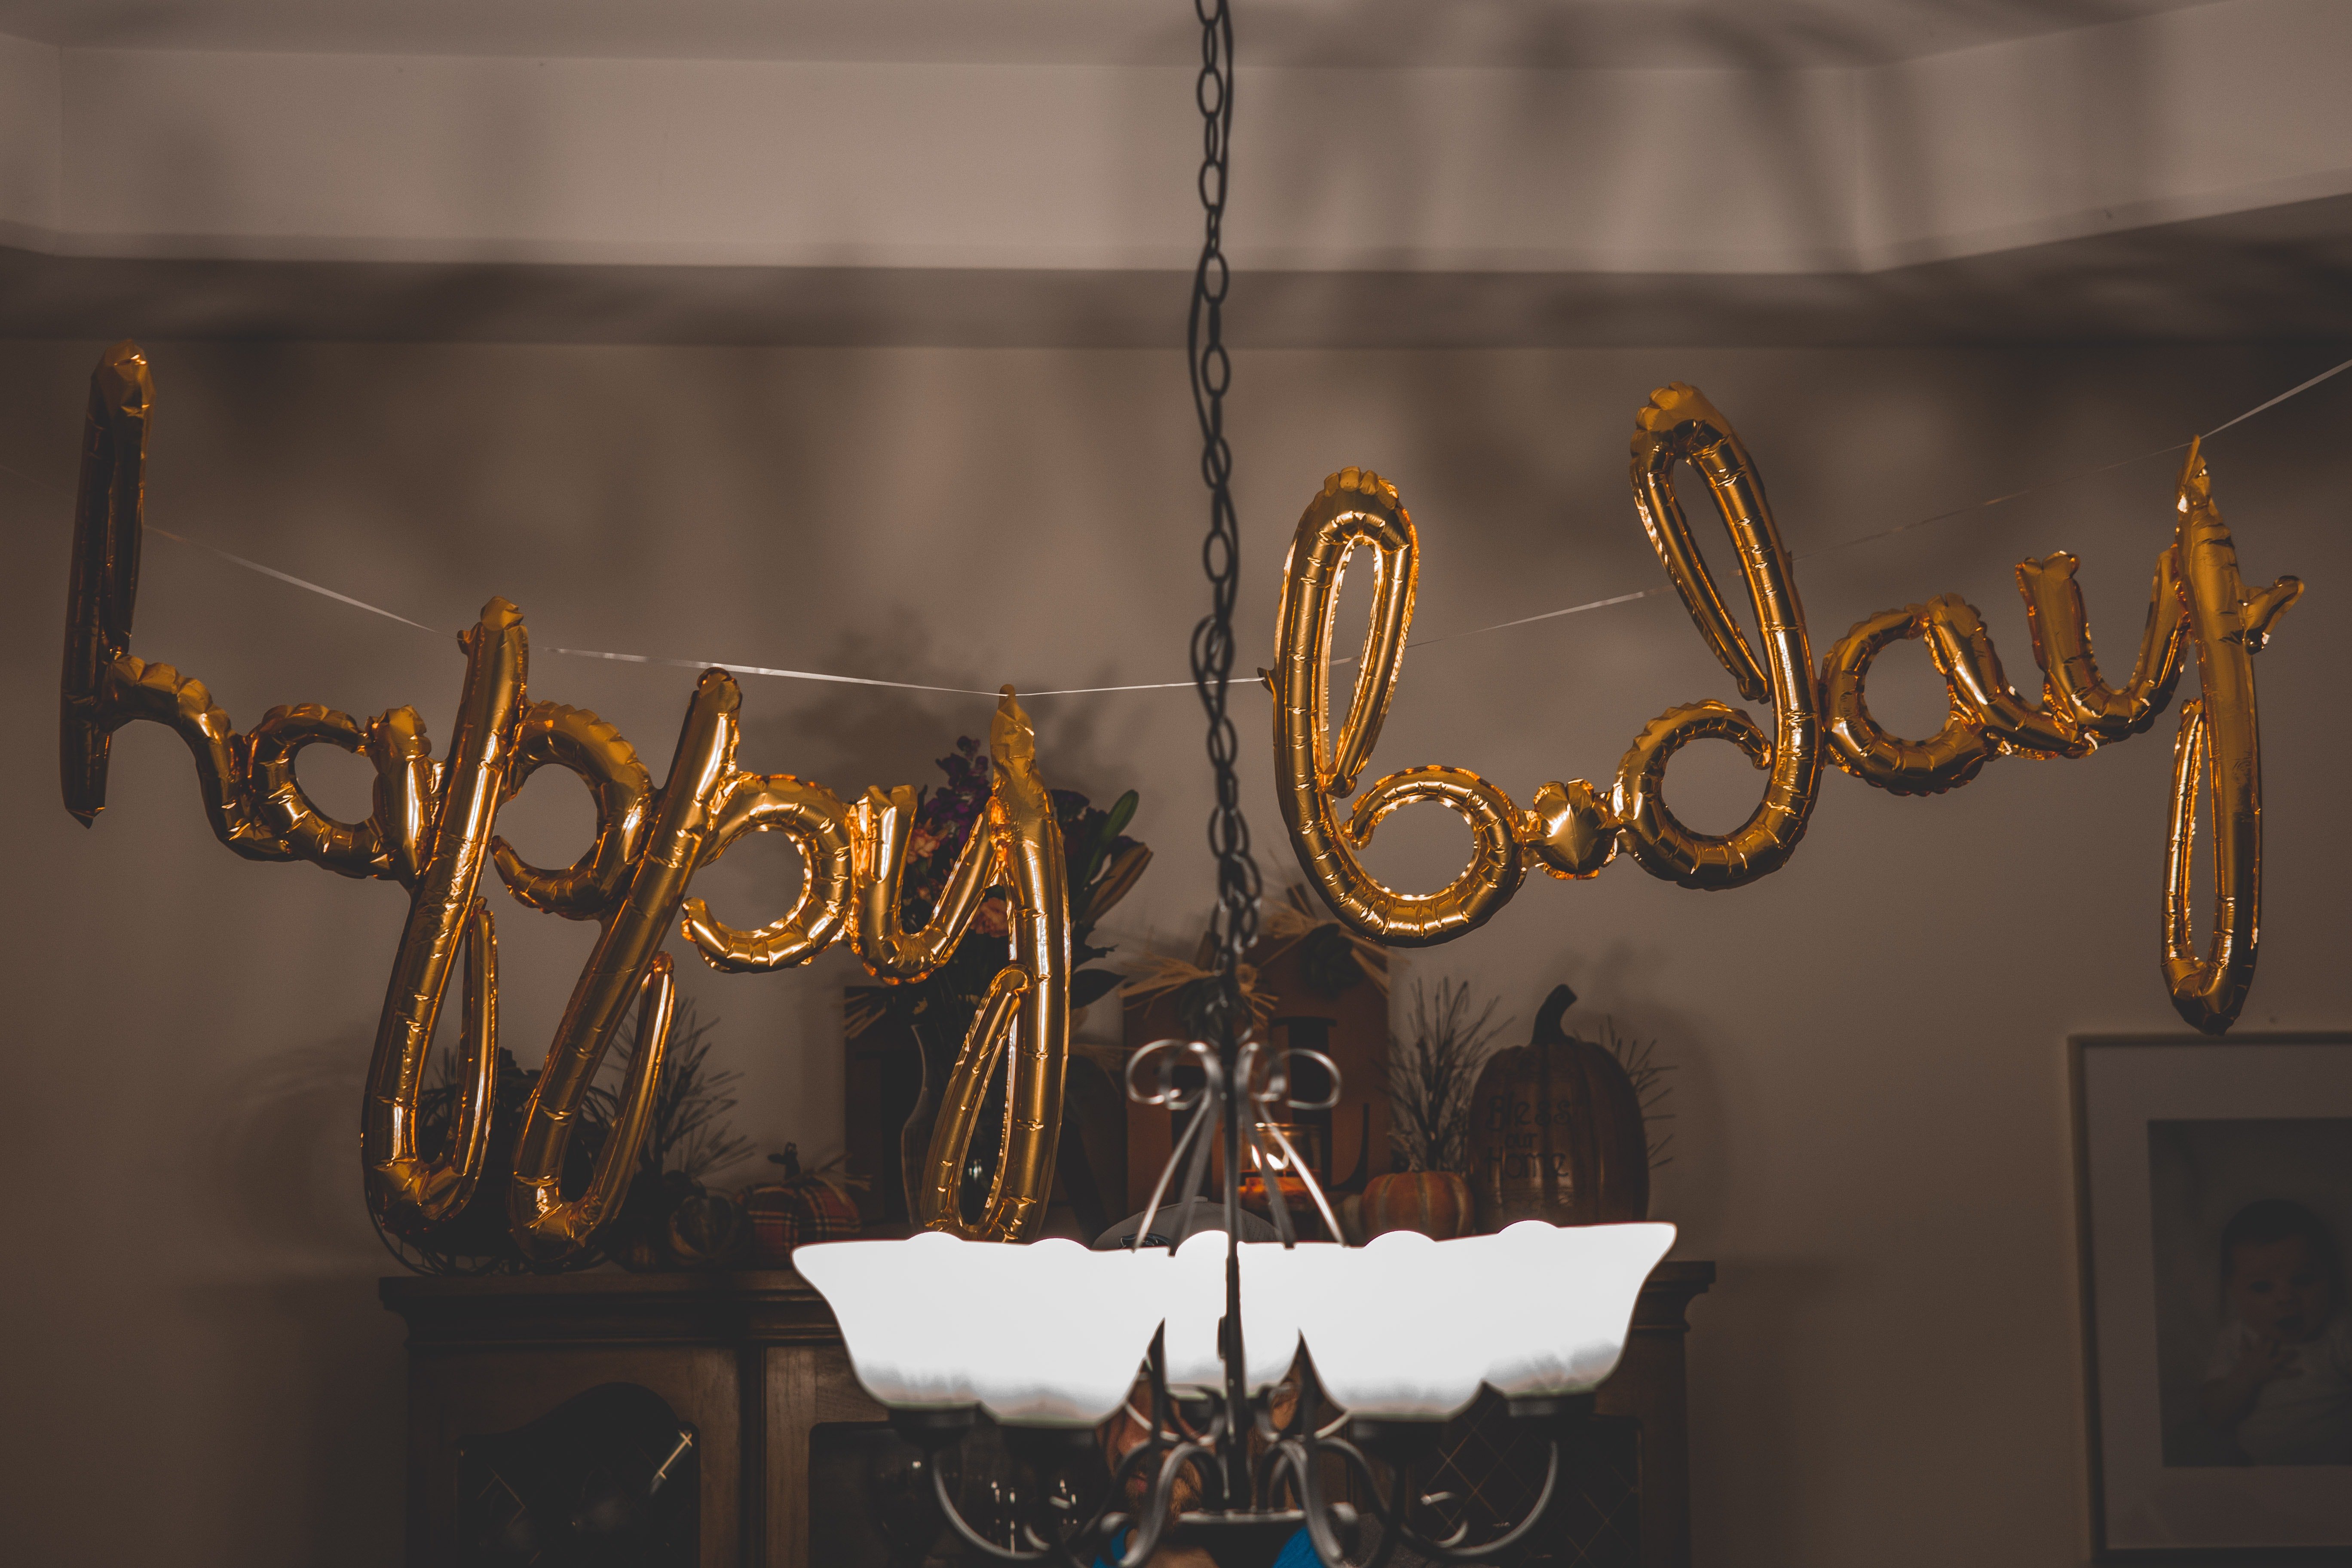 Decoración de cumpleaños con globos. | Foto: Pexels